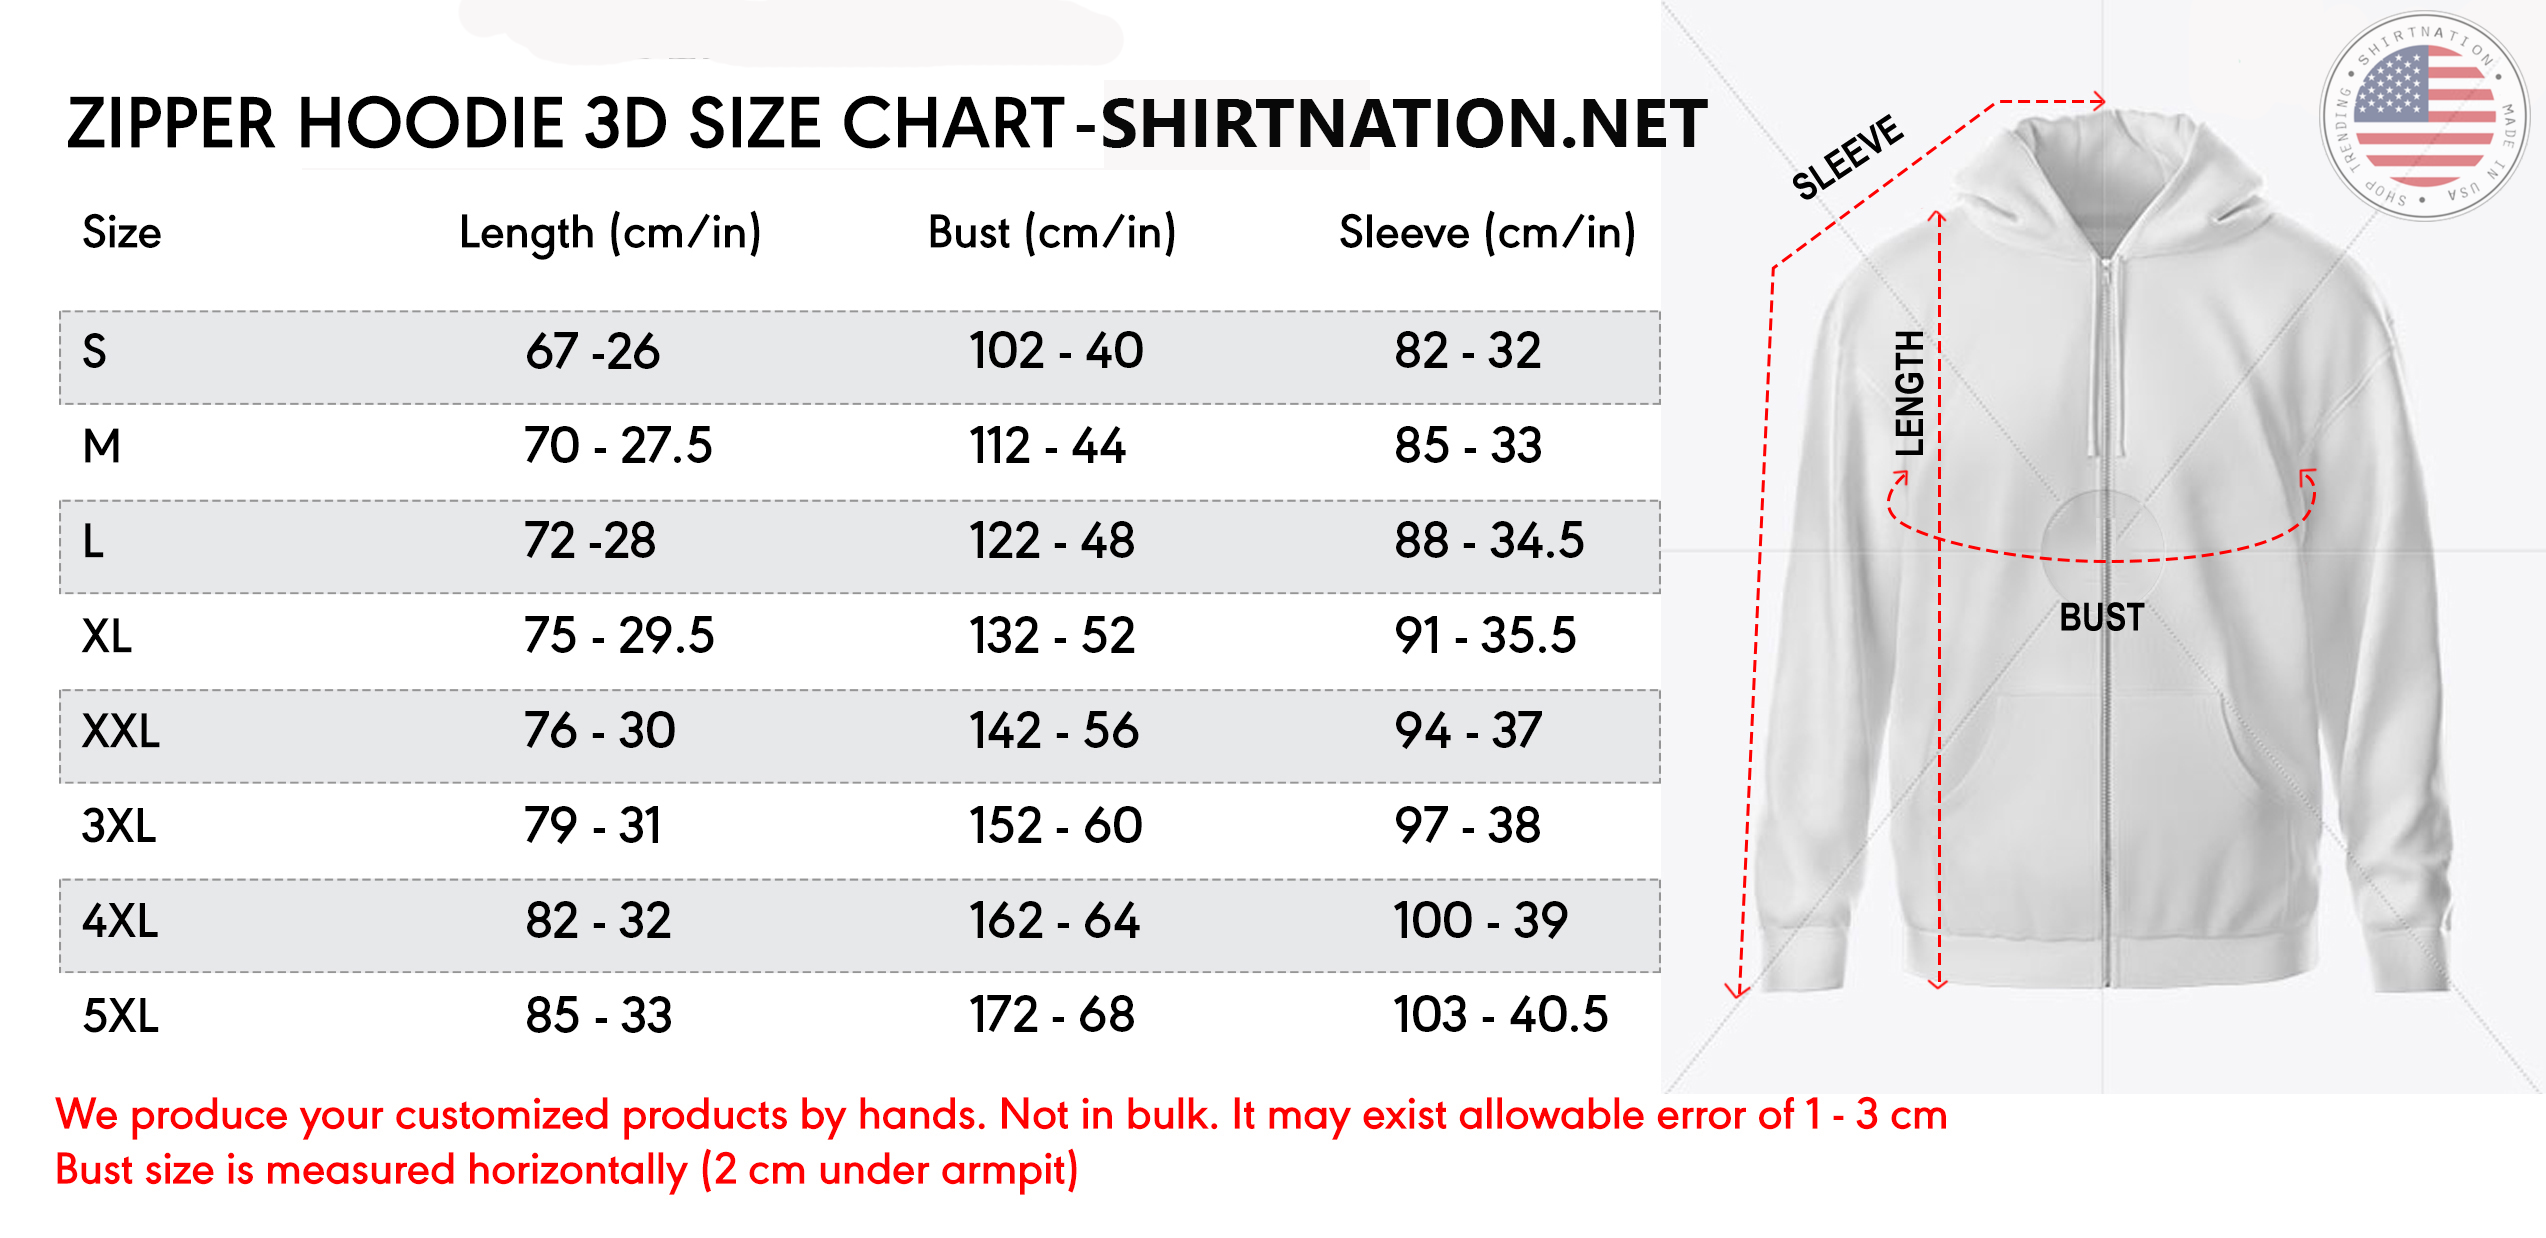 Zip Hoodie Size Chart Shirtnation